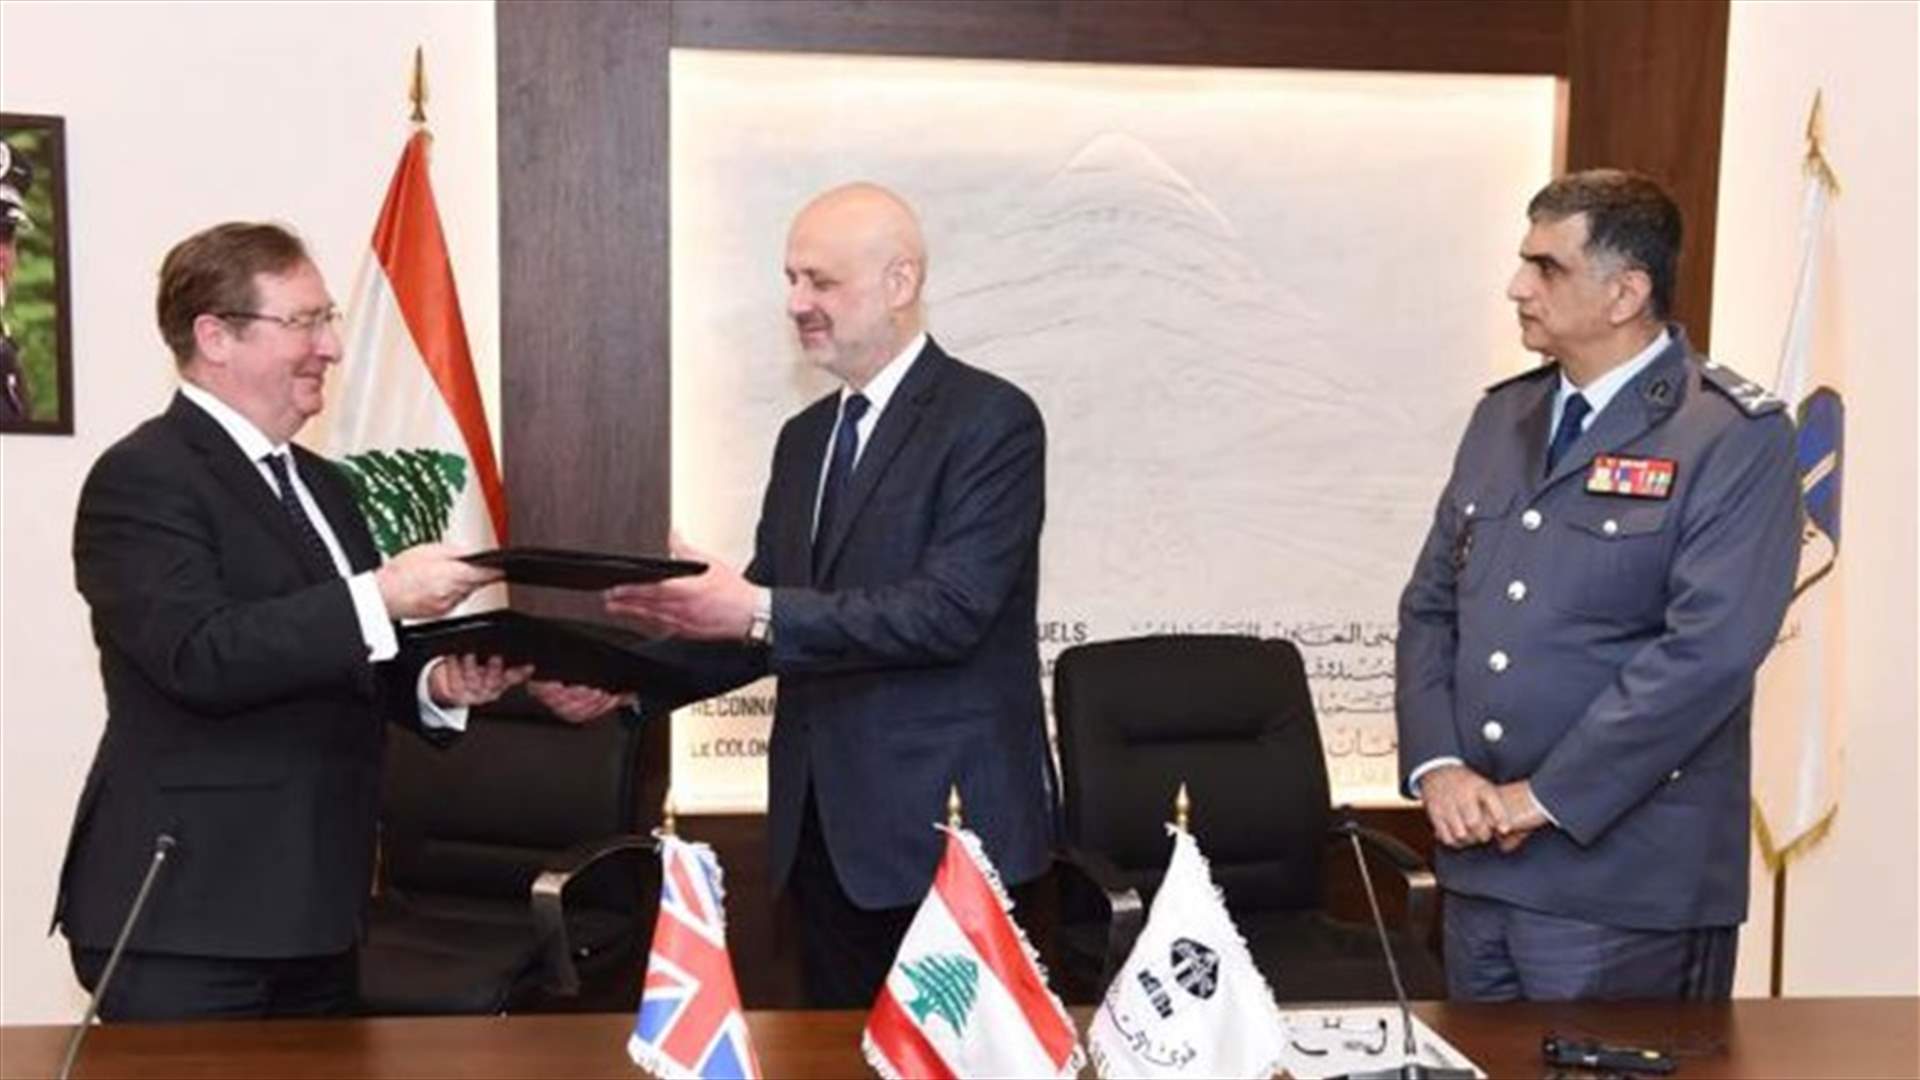 توقيع مذكرة تفاهم بين وزير الداخلية والبلديات وسفير المملكة المتحدة في لبنان لدعم مؤسسة قوى الأمن الداخلي